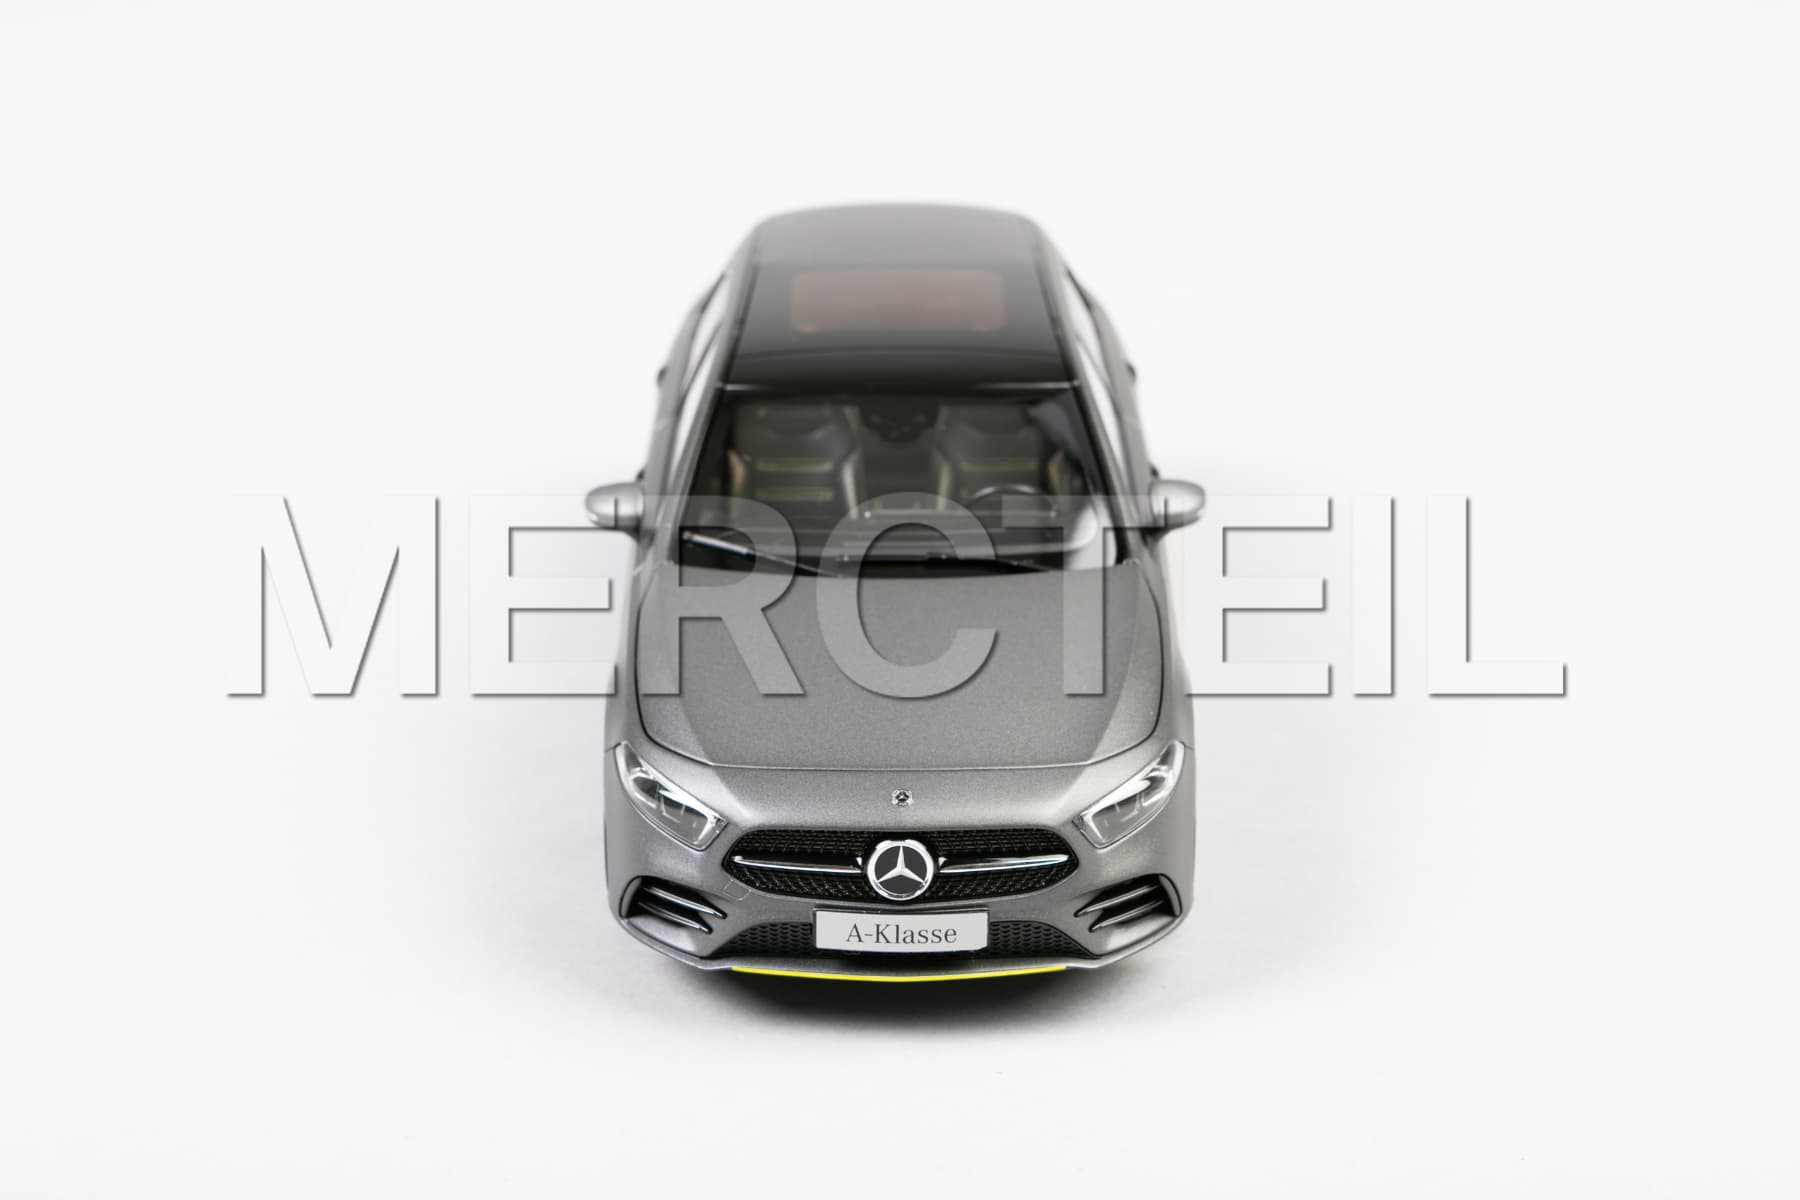 A-Class AMG Line 118 Model Car 177 Genuine Mercedes-Benz